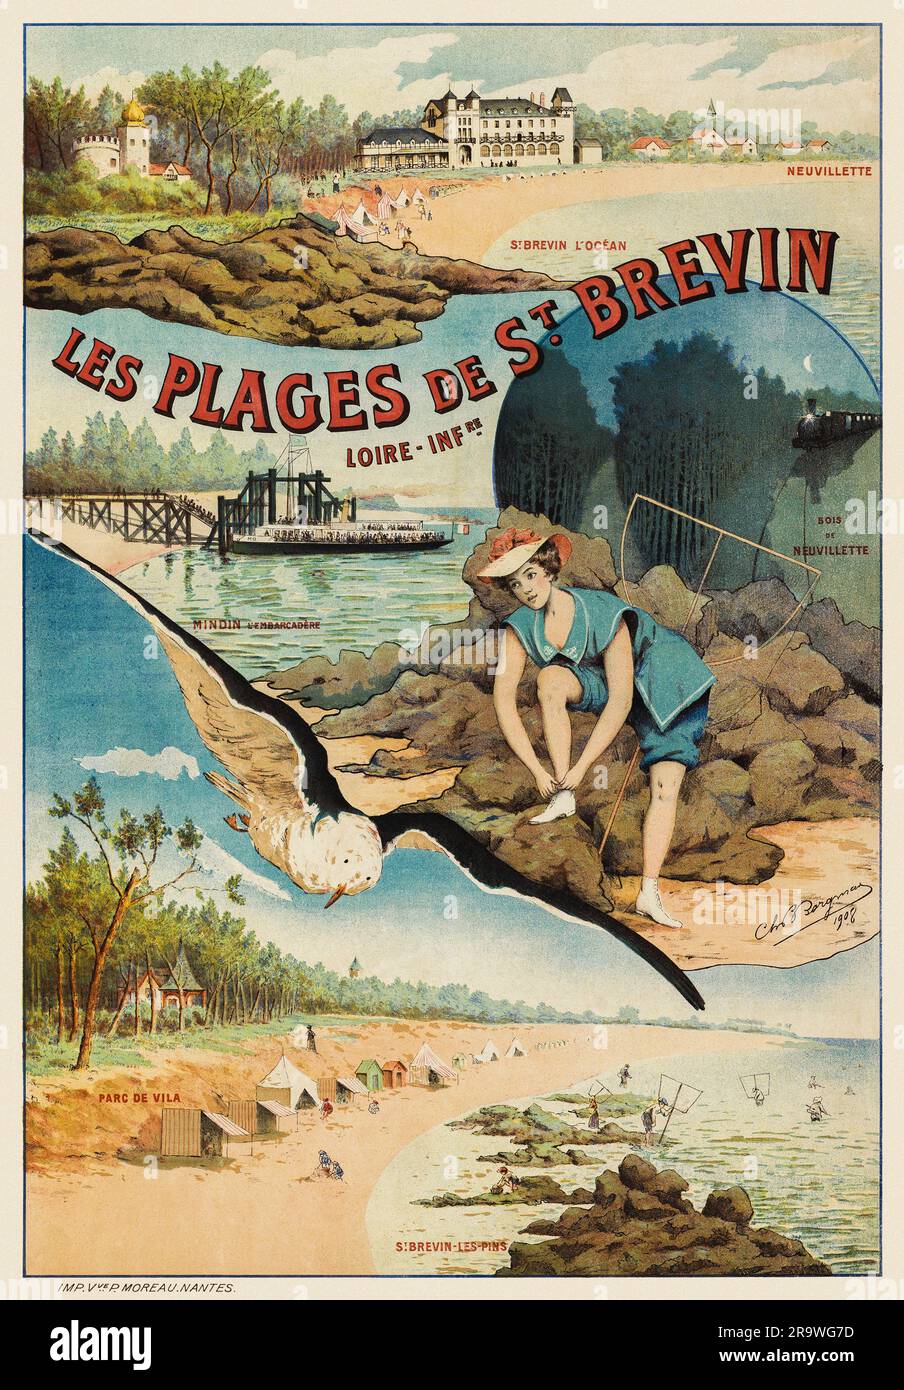 Les Plages de St Brévin. Loire-Infre. Neuvillette, St Brévin l'océan, bois de Neuvillette by Ch. B. Bergman (dates unknown). Poster published in 1908 in France. Stock Photo